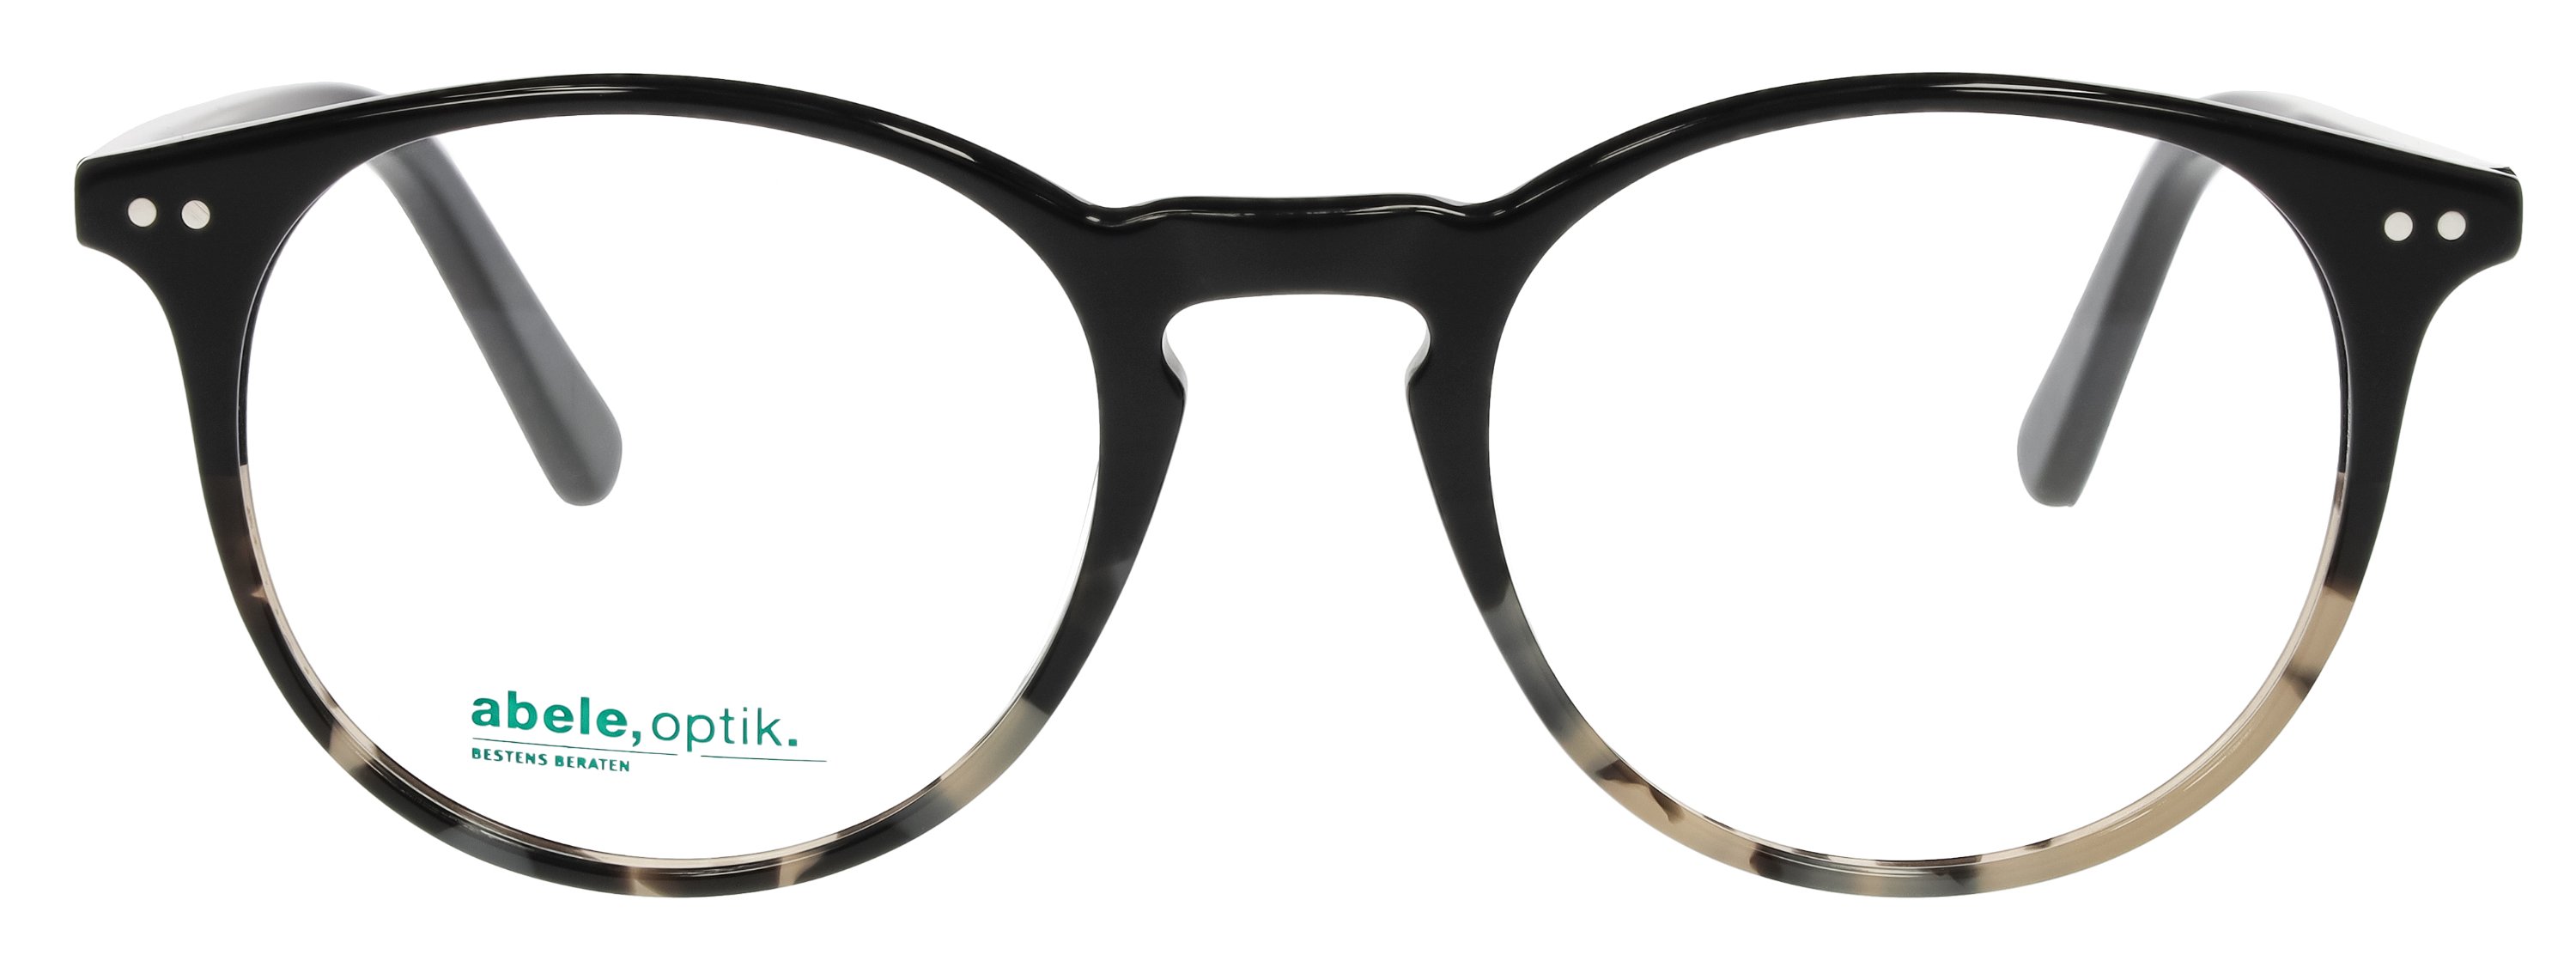 abele optik Brille für Herren in schwarz und hellgrau aus Kunststoff 148391